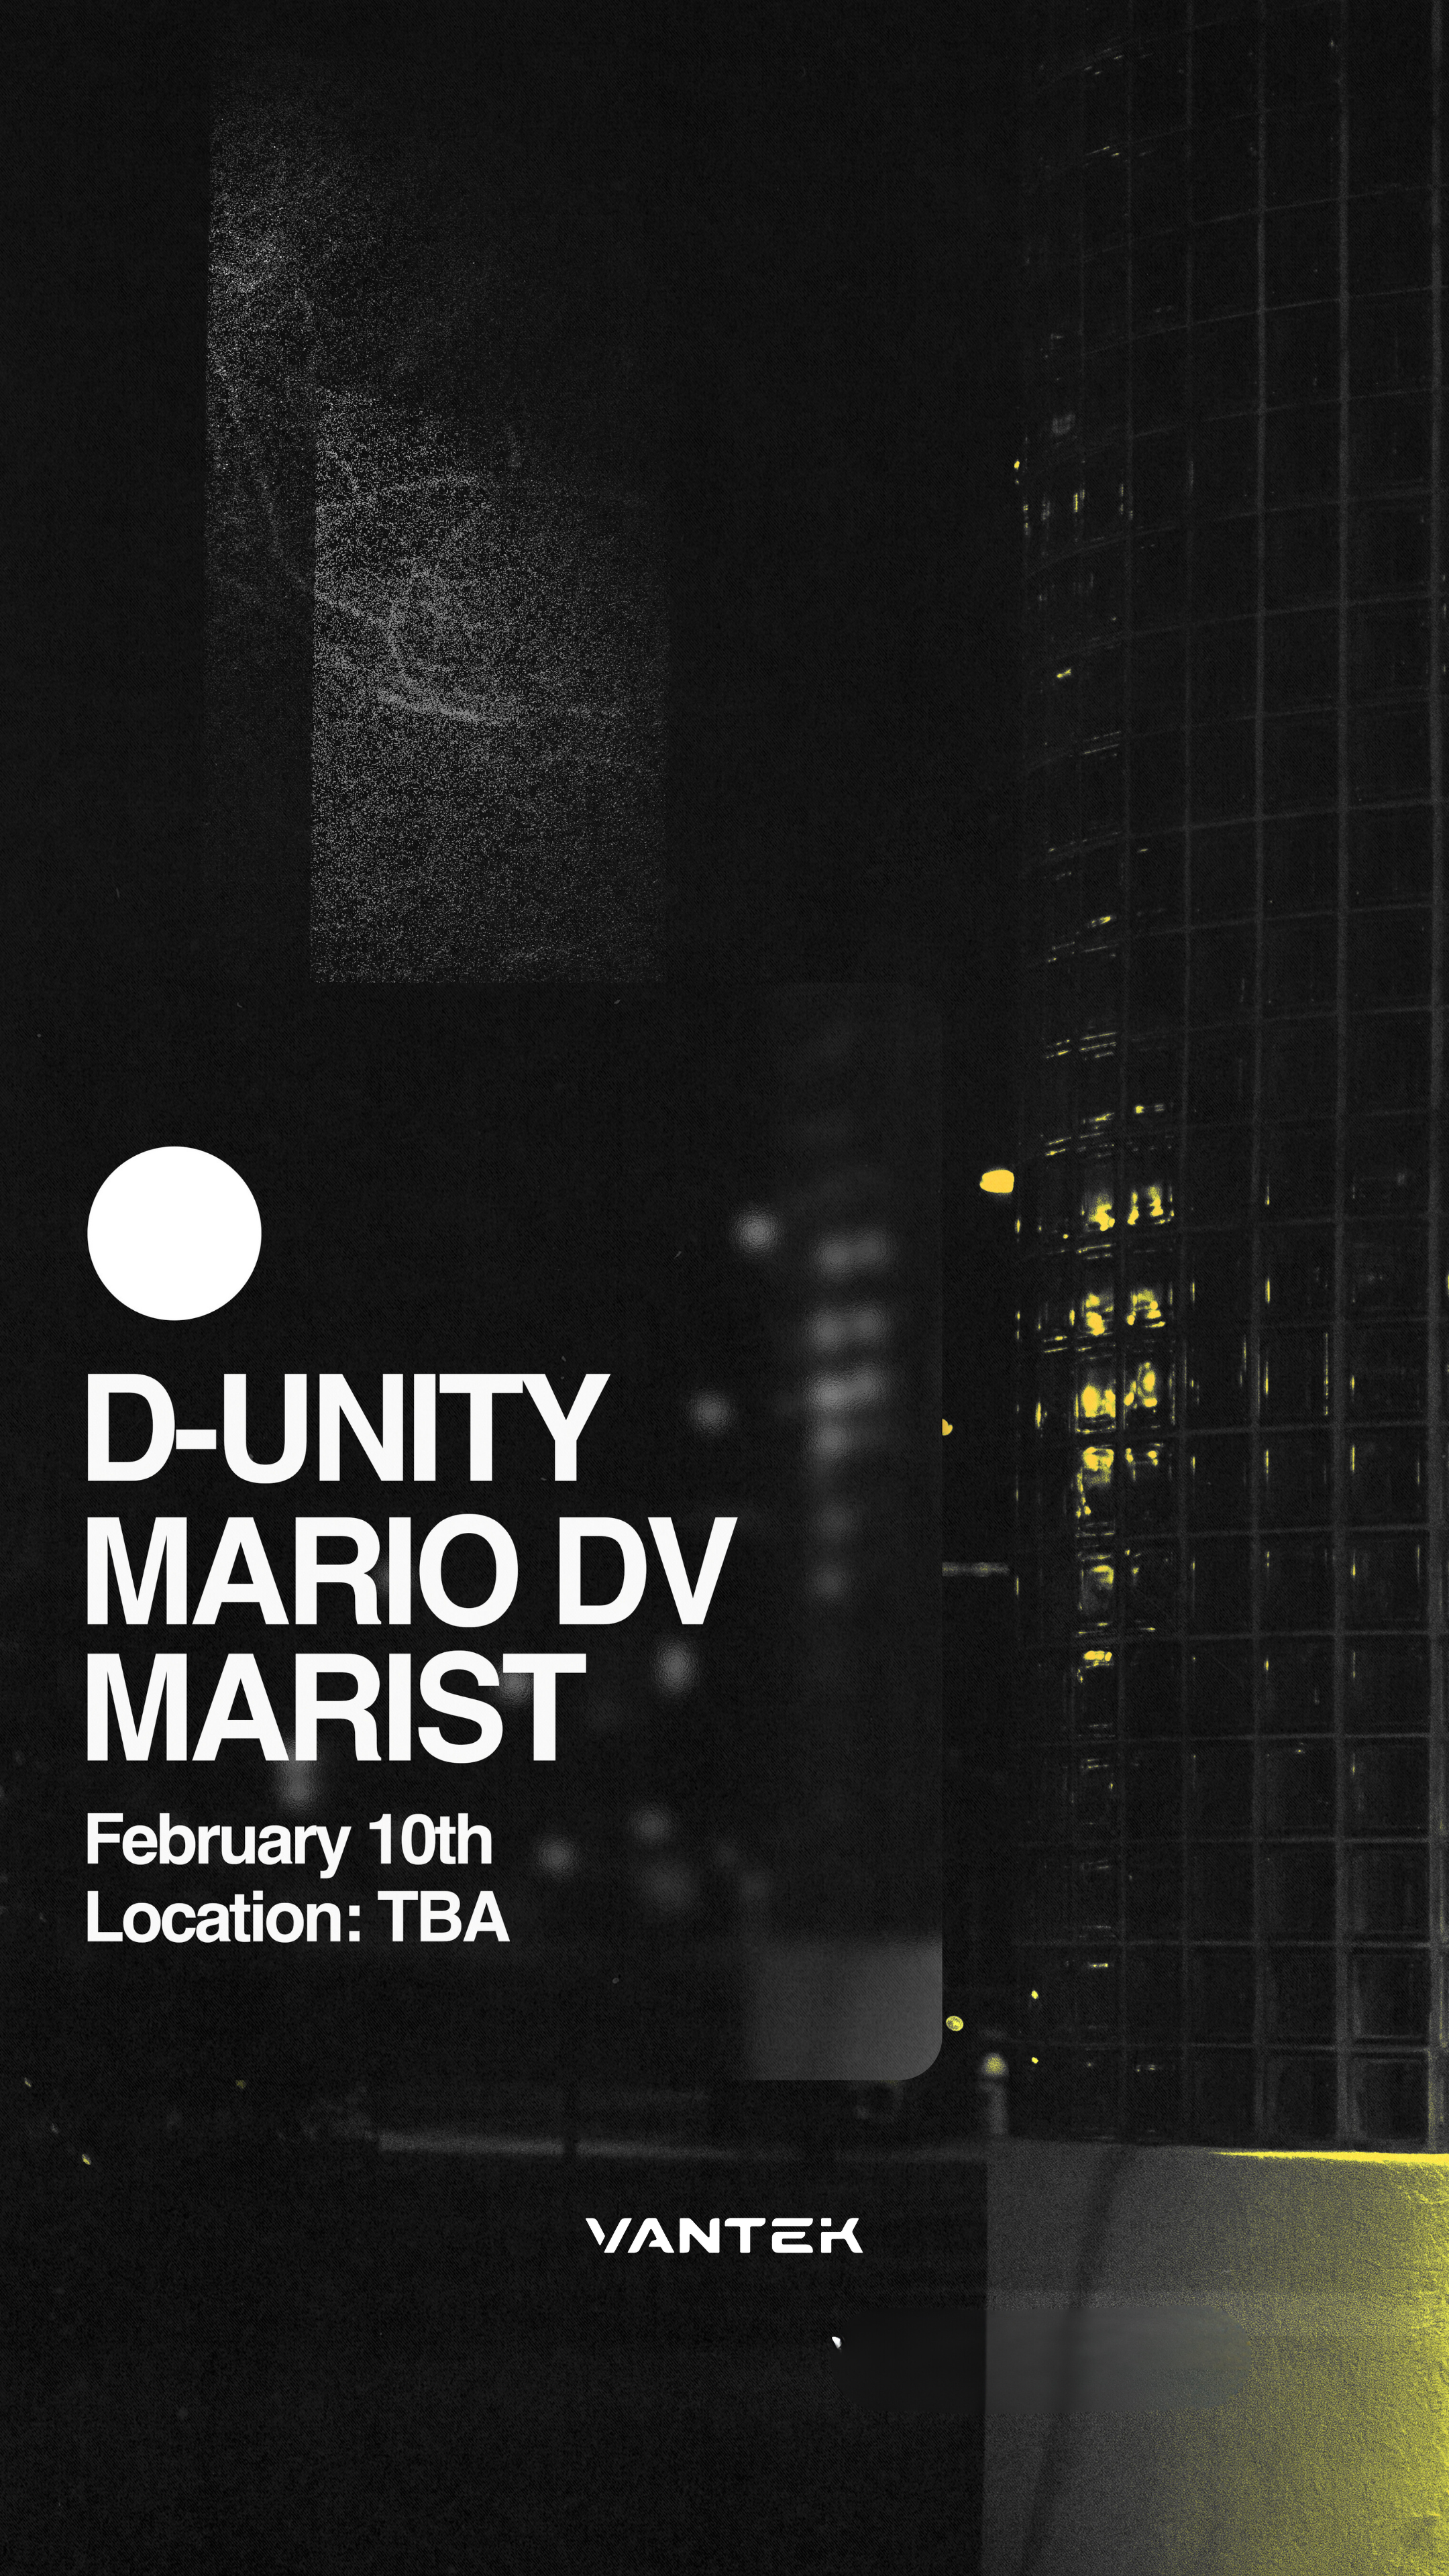 VANTEK PRESENTS: D-Unity, MARIO DV, MARIST - Página frontal